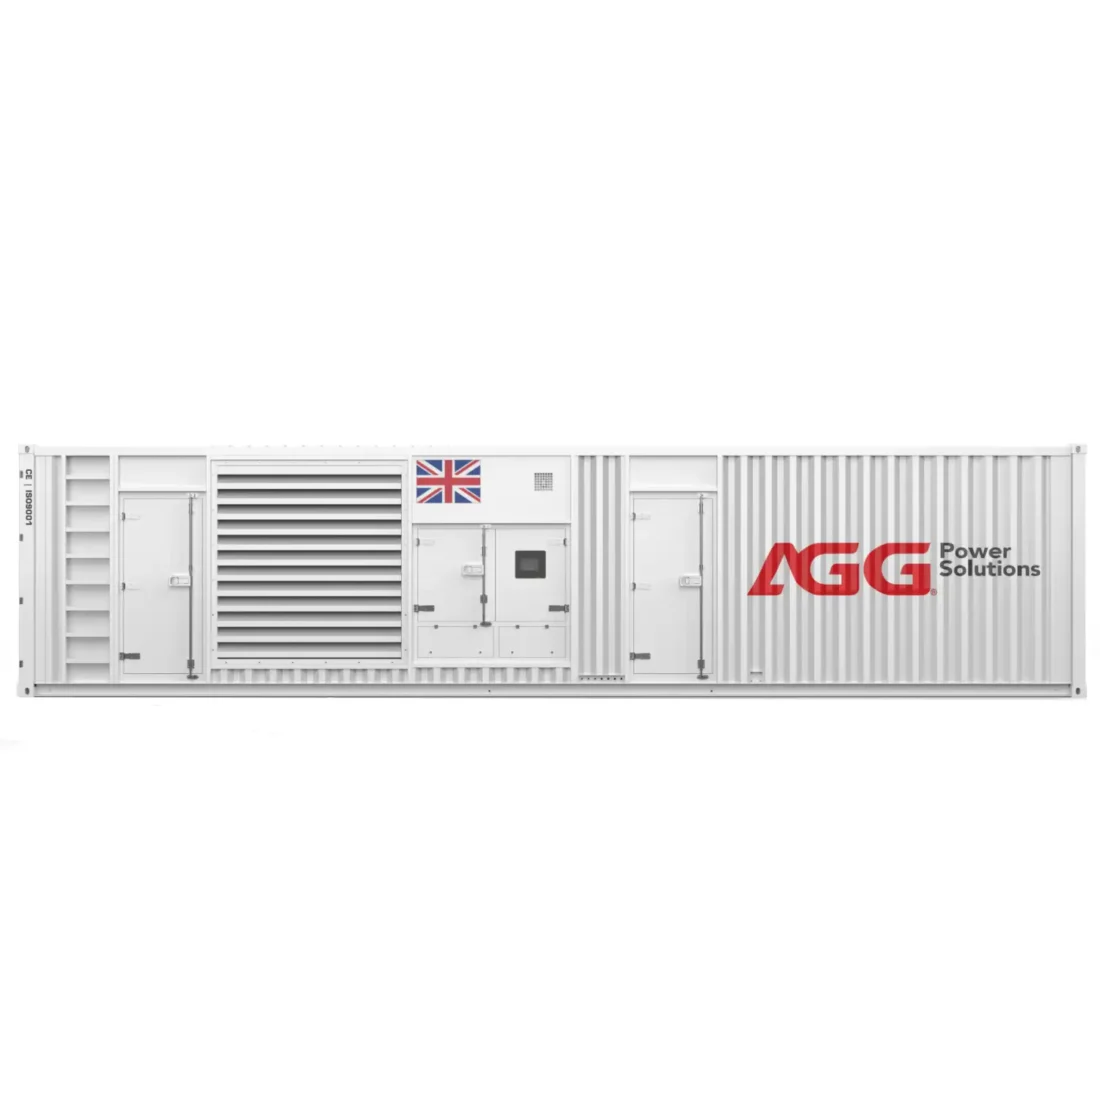 AGG P1875D5 1900kVA Diesel Generator